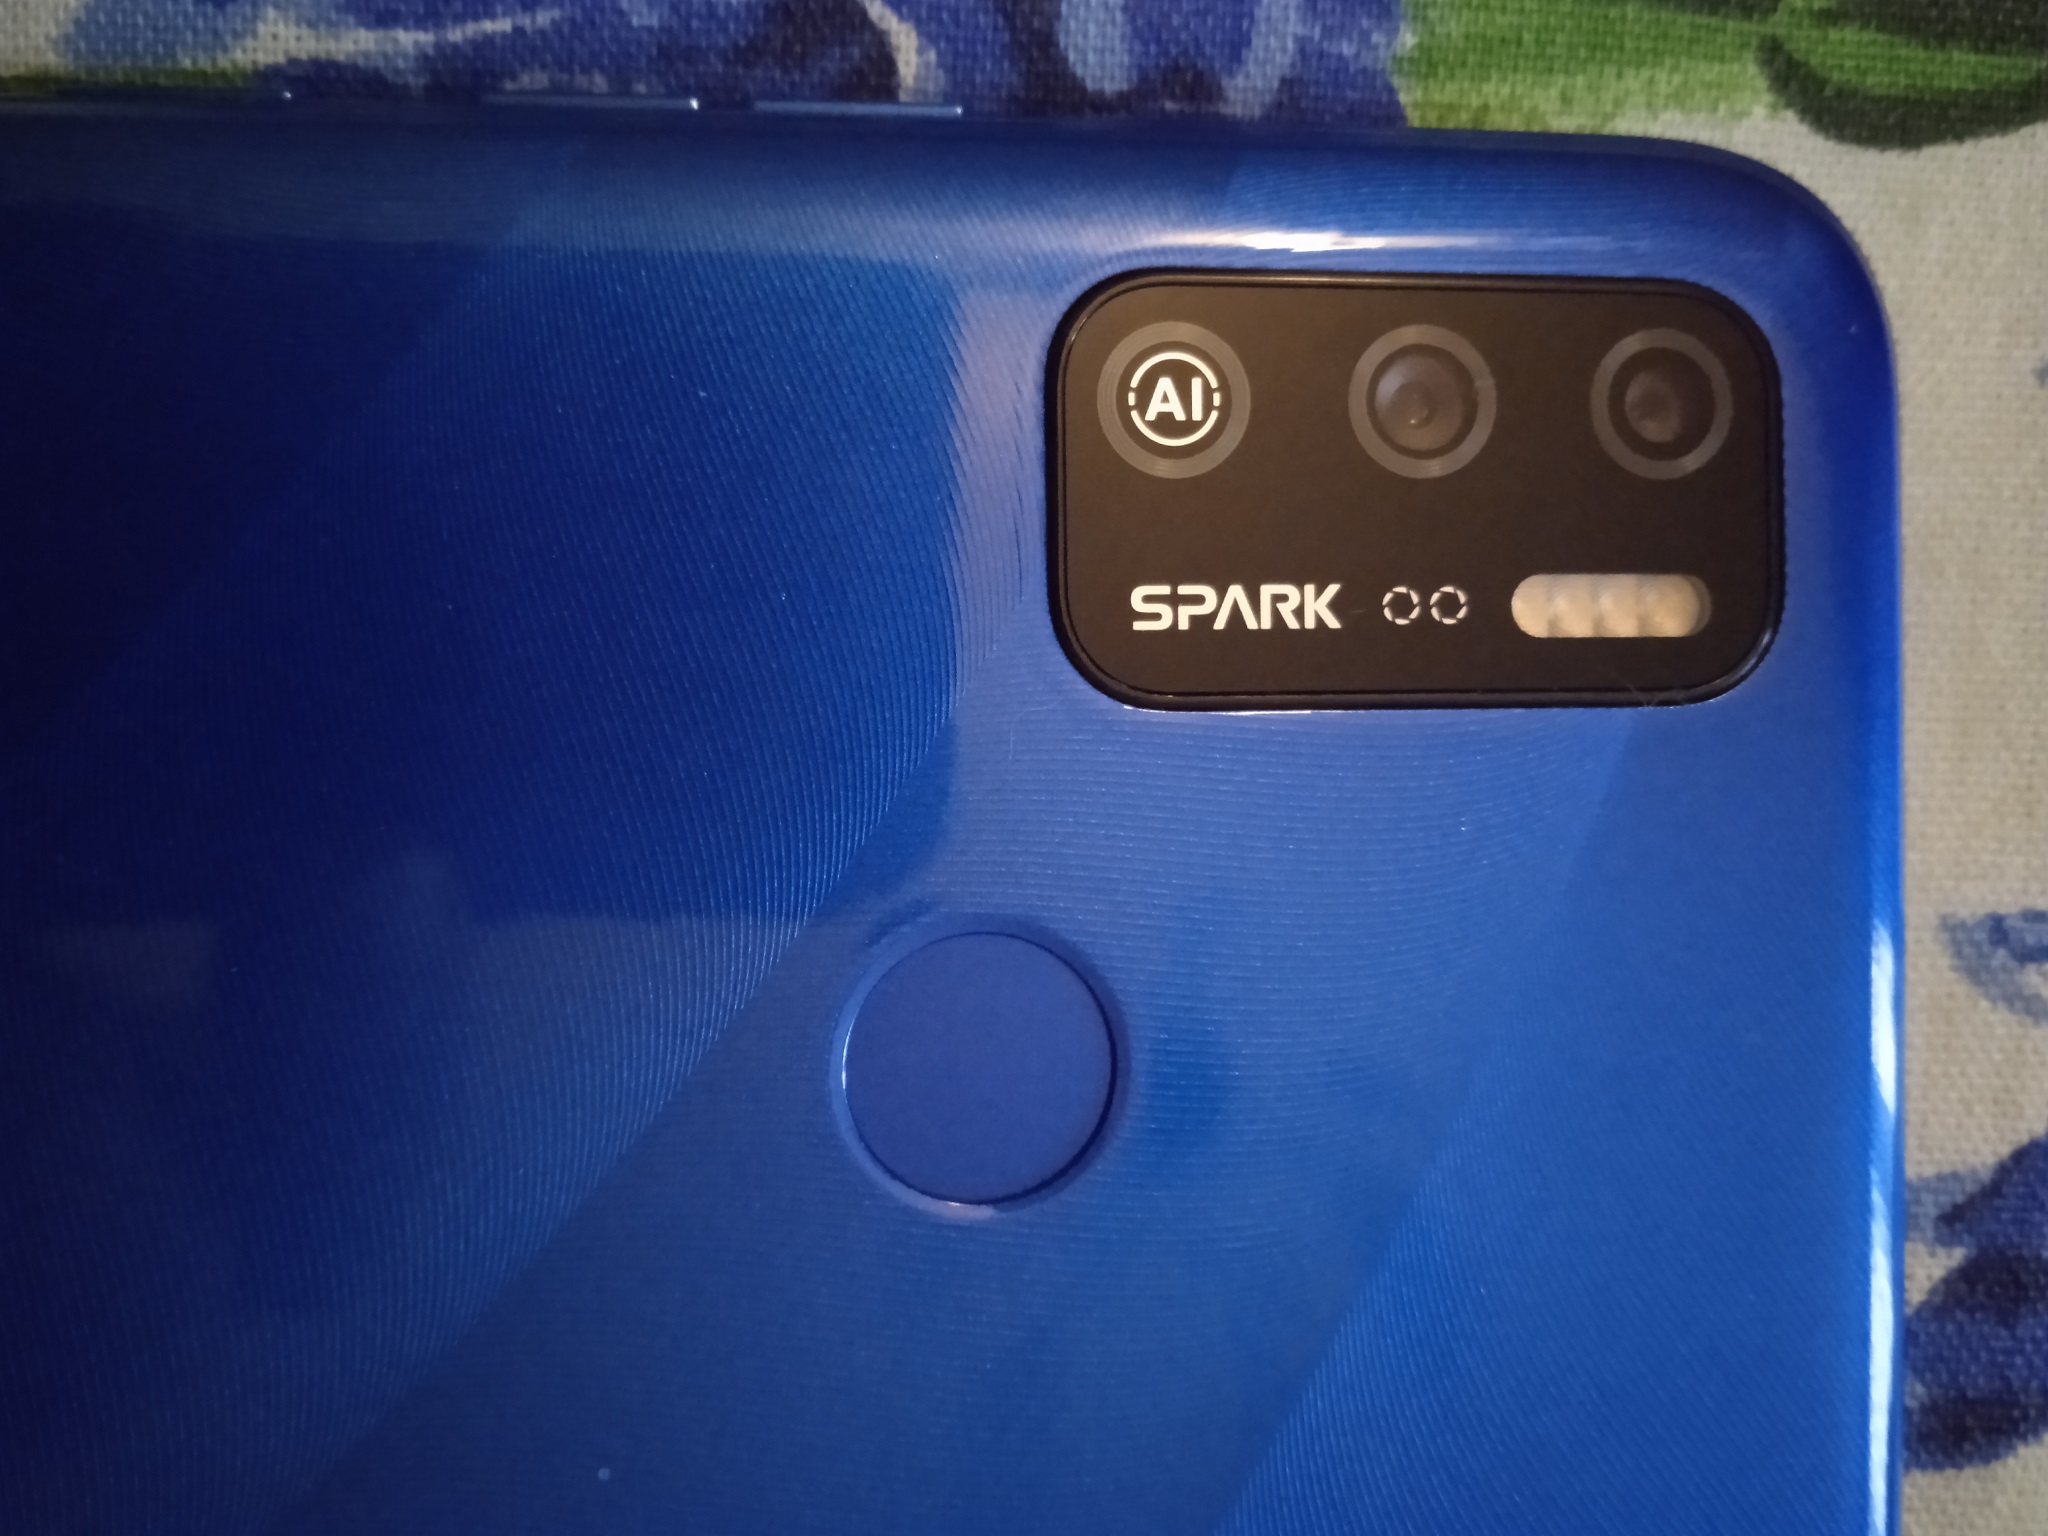 Техно 5 аир. Techno Spark 5 Air. T͟e͟c͟n͟o͟ s͟p͟a͟r͟k͟5a͟i͟r͟. " Смартфон Tecno Spark 5 Air синий. Смартфон Techno Spark 5 Air.